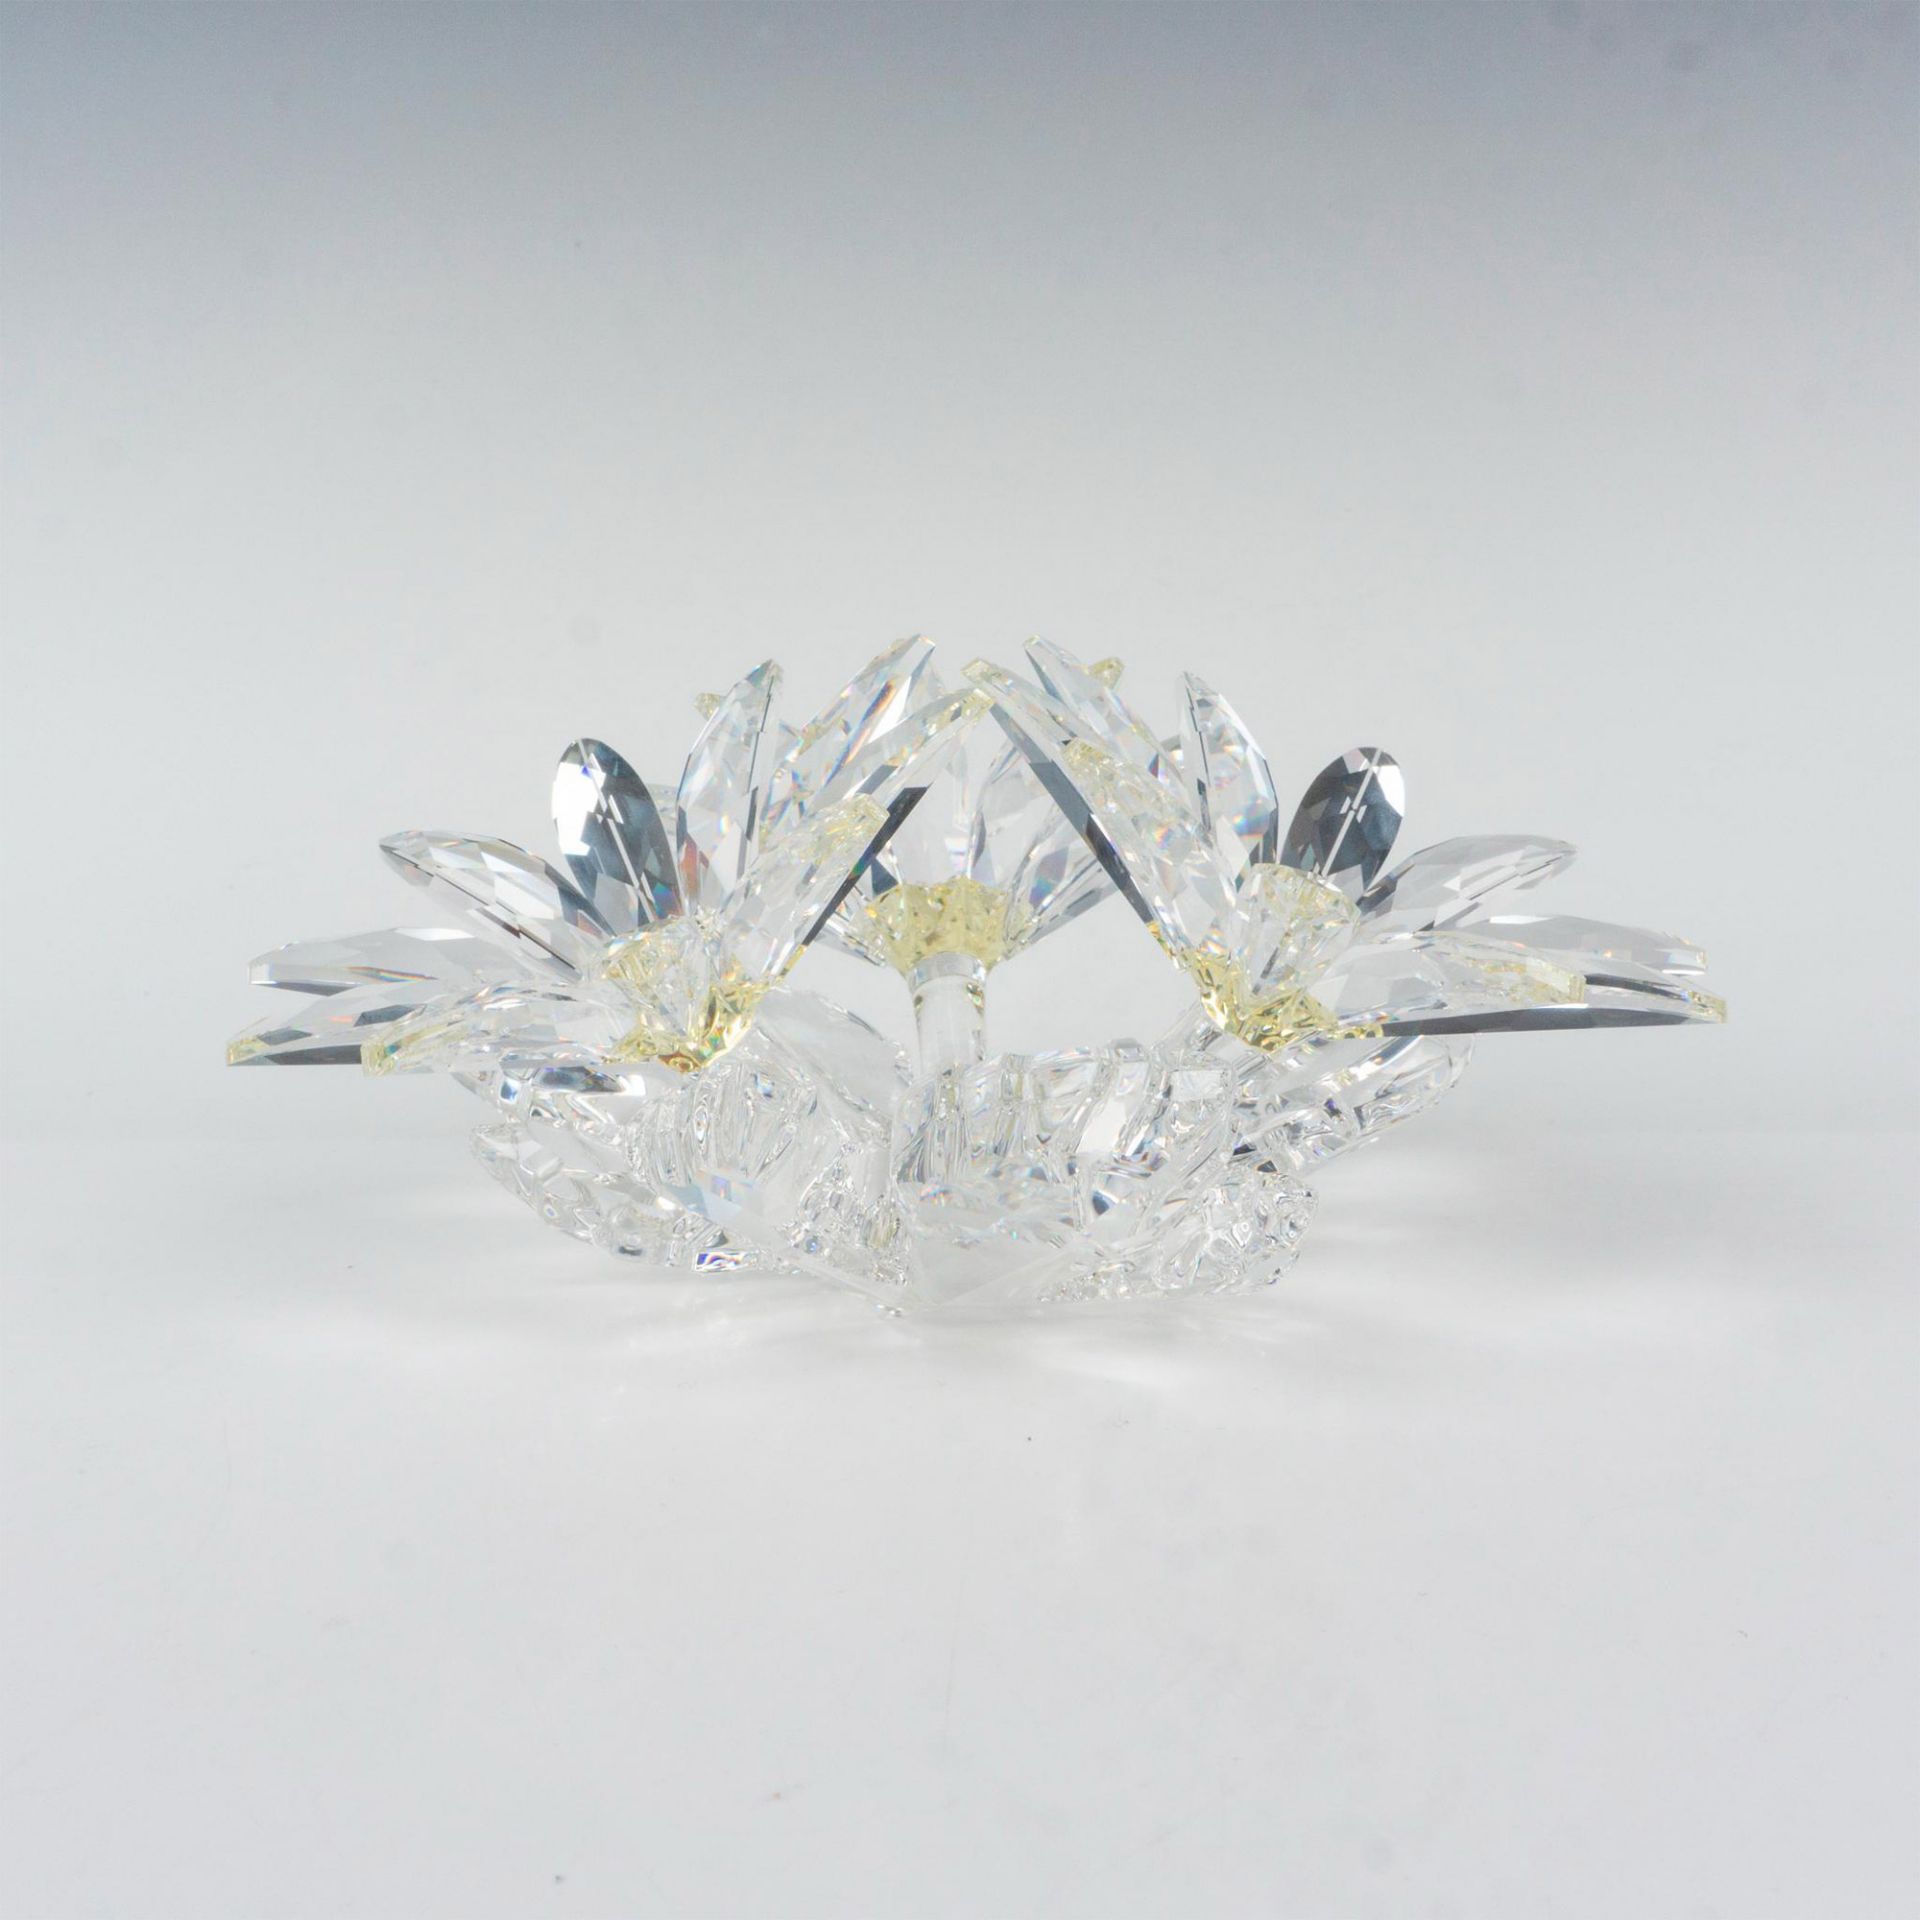 Swarovski Crystal Figure, Maxi Flower Arrangement - Bild 2 aus 4